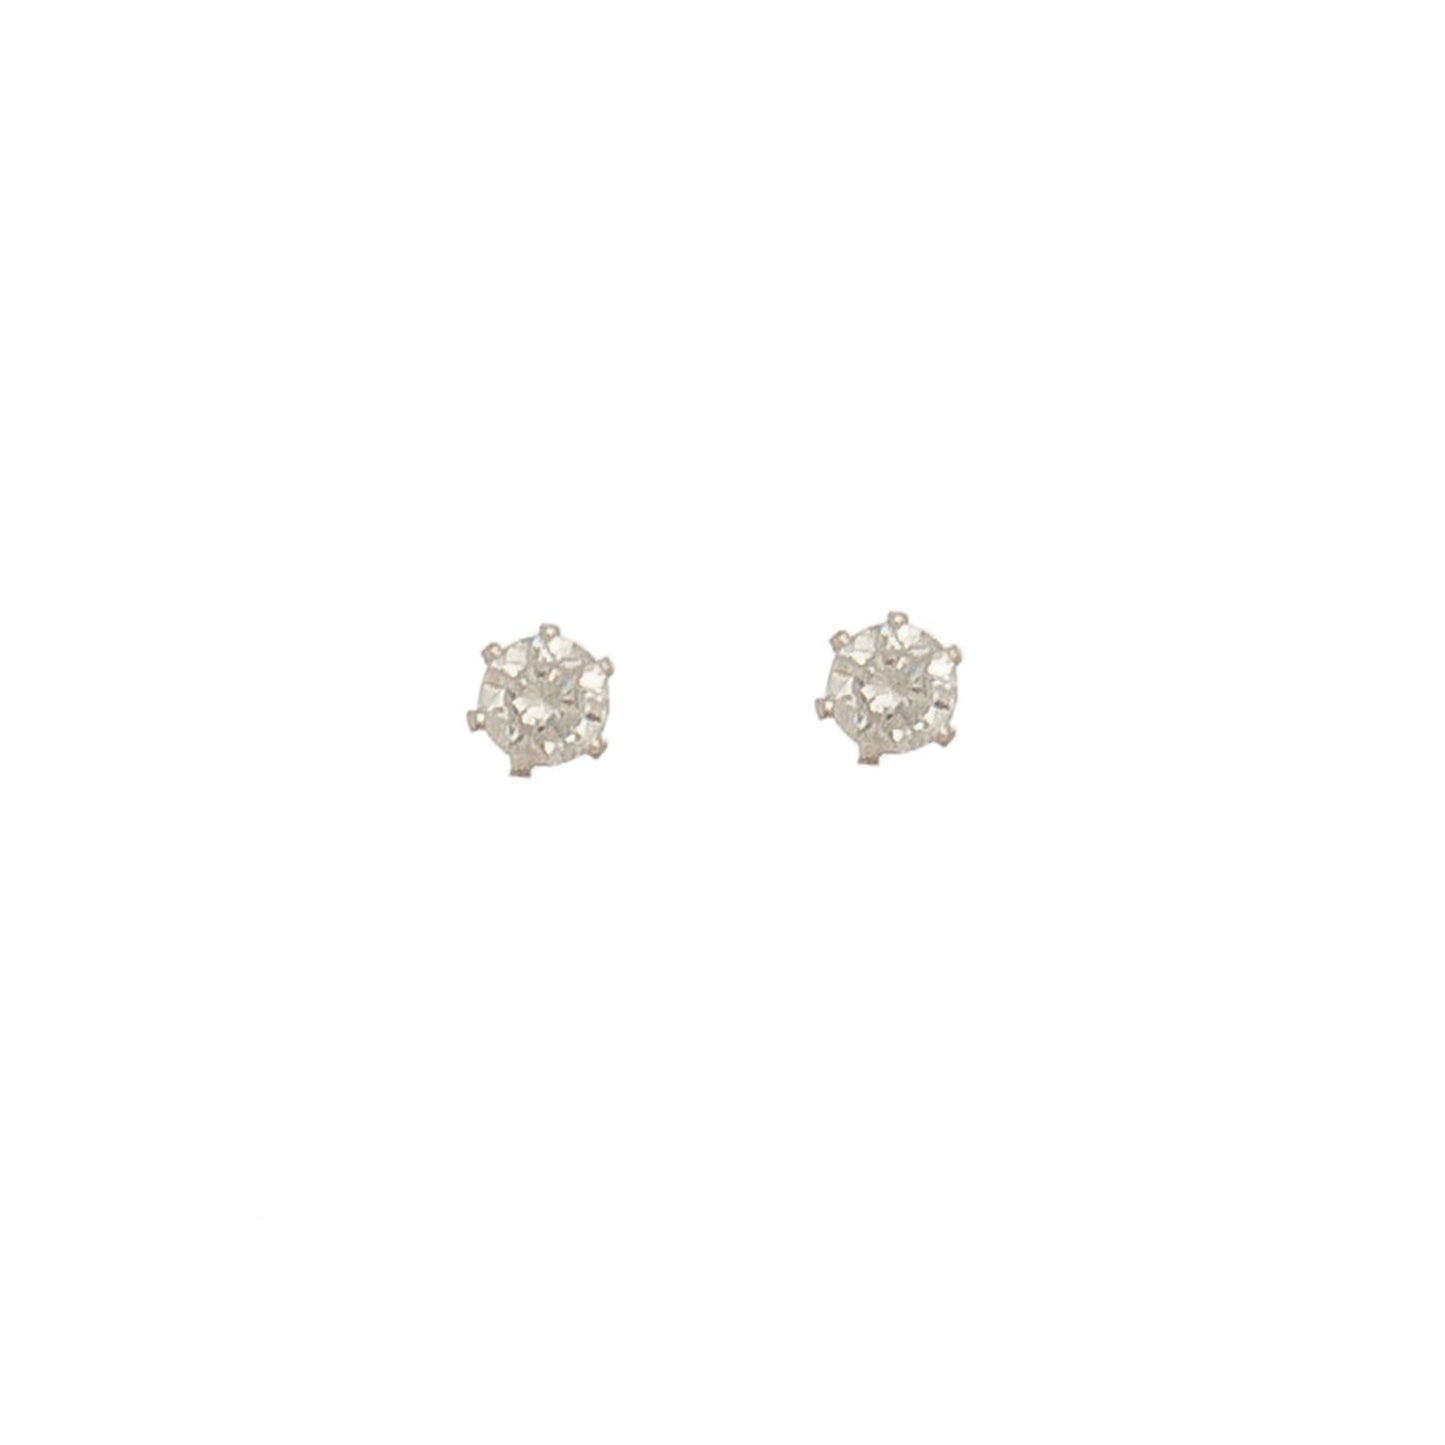 2mm Cubic Zirconia Stud Earrings